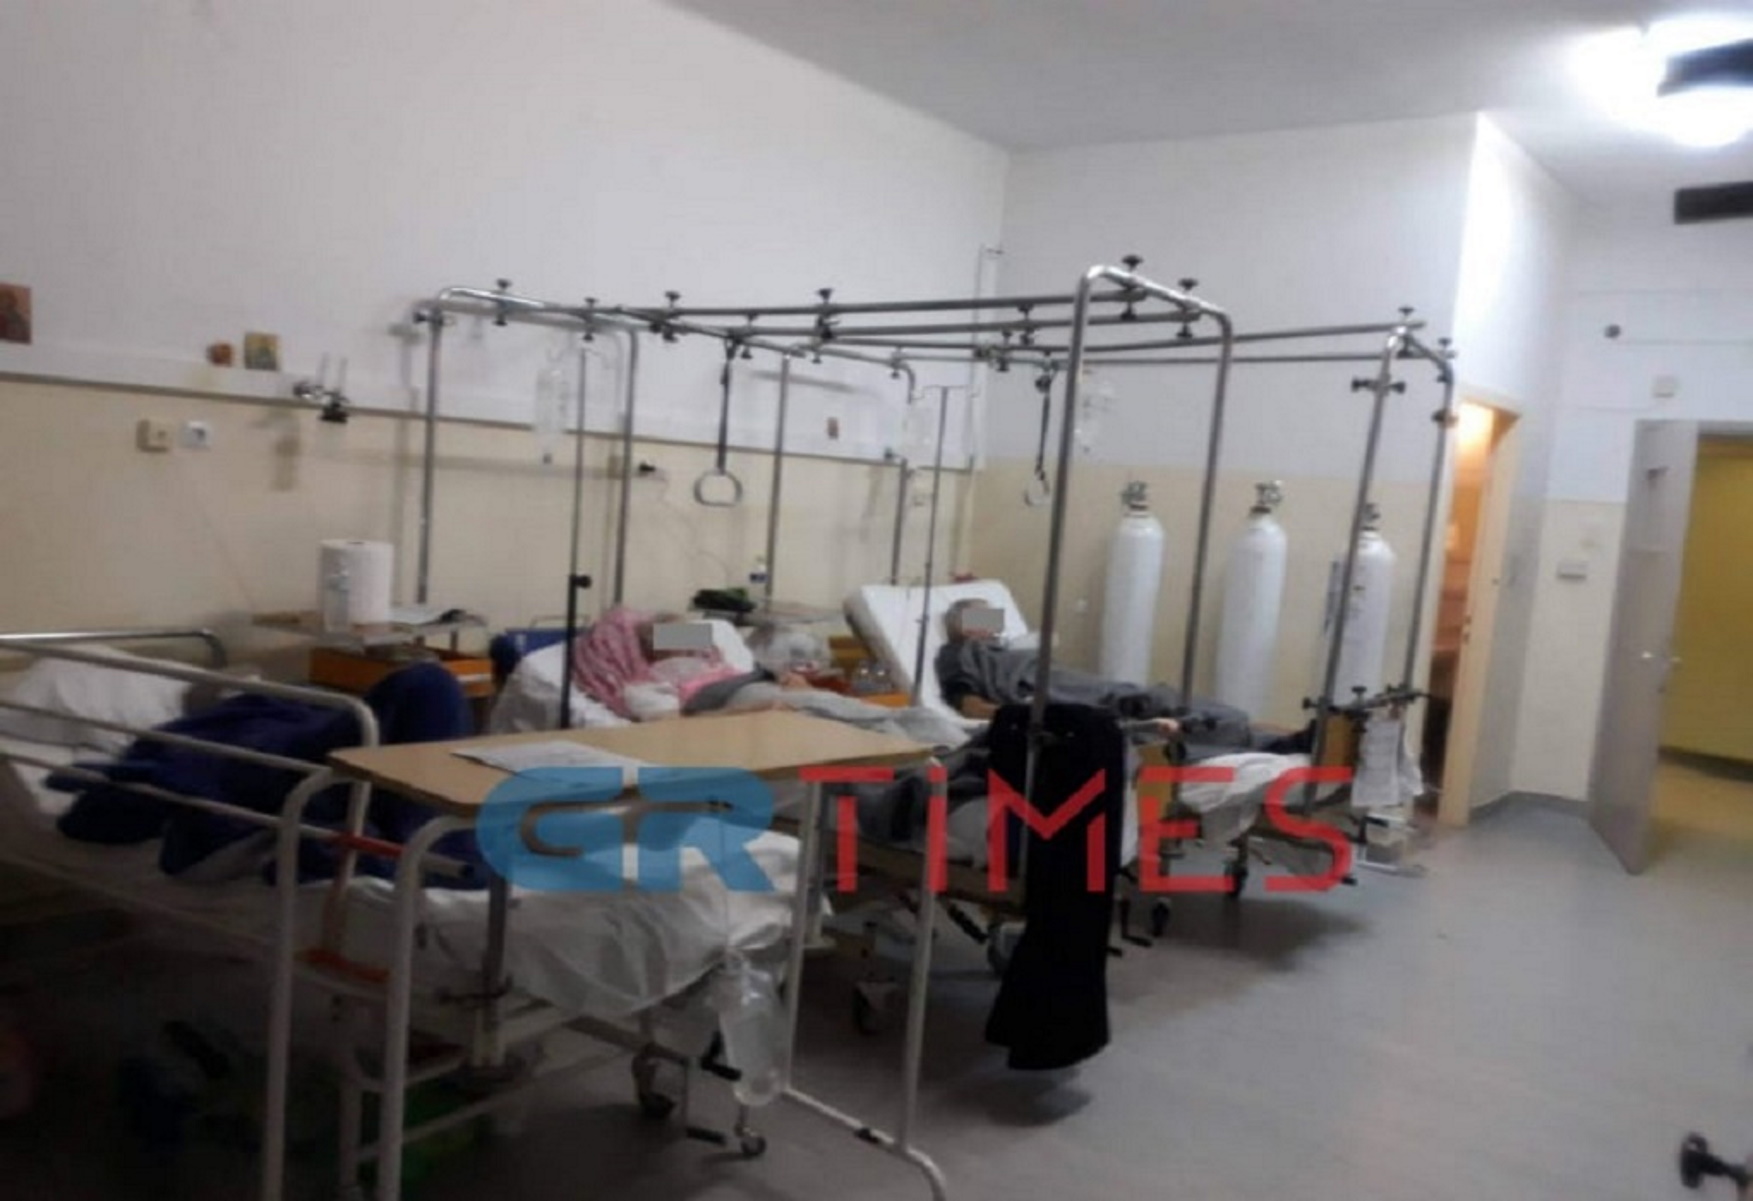 Εικόνες σοκ στο νοσοκομείο Κιλκίς! Διασωληνωμένοι με κορονοϊό εκτός ΜΕΘ (pics)